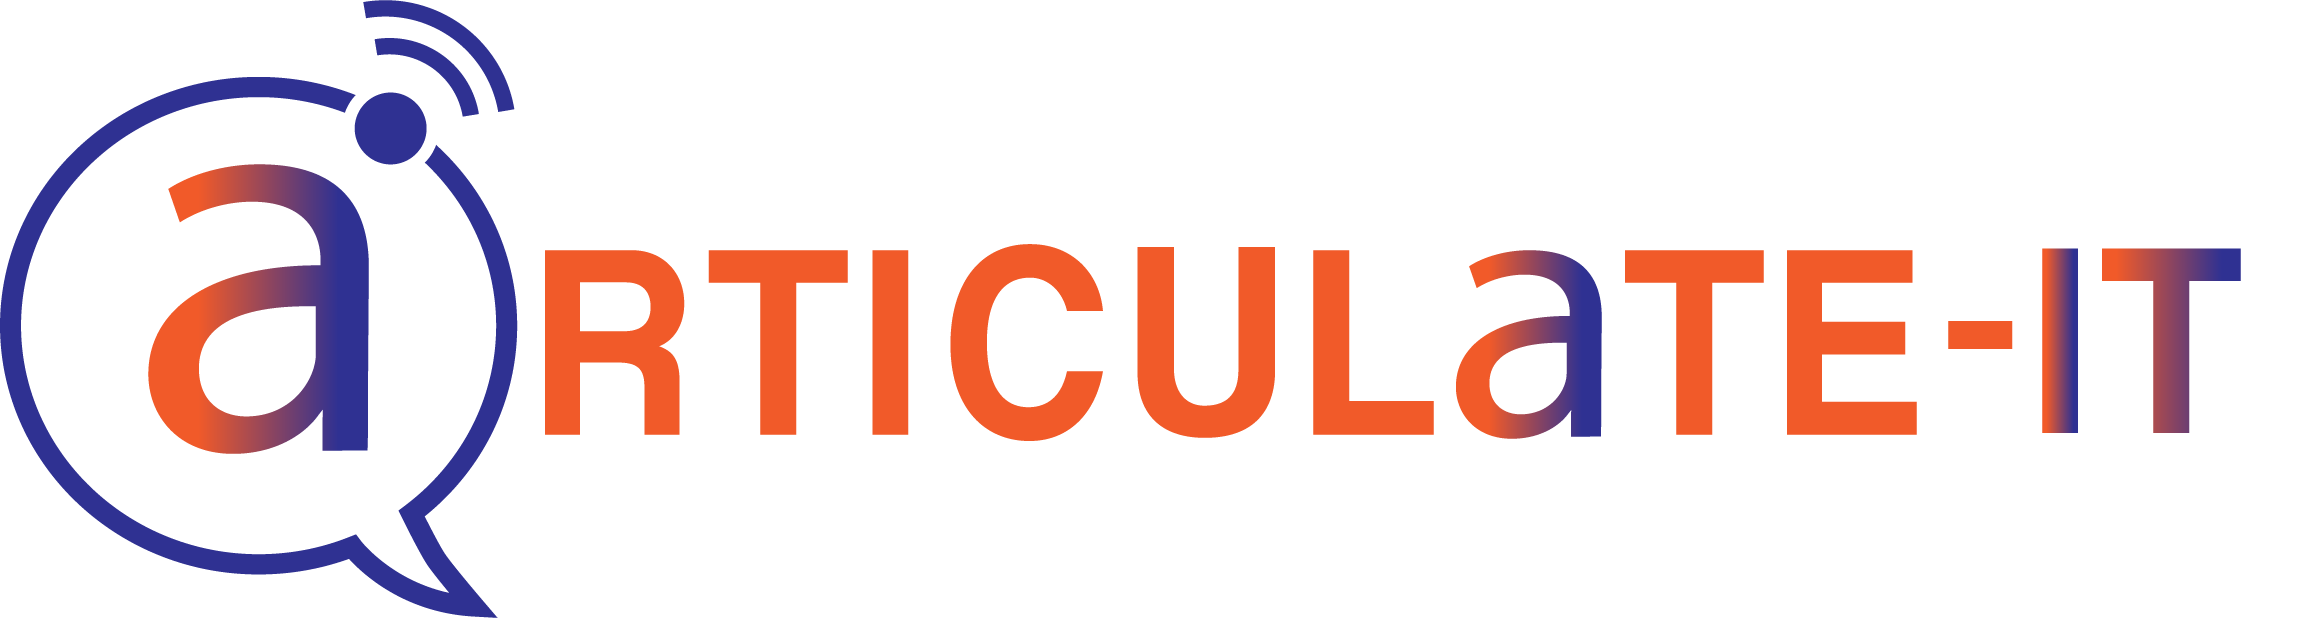 ArticualteIT logo new